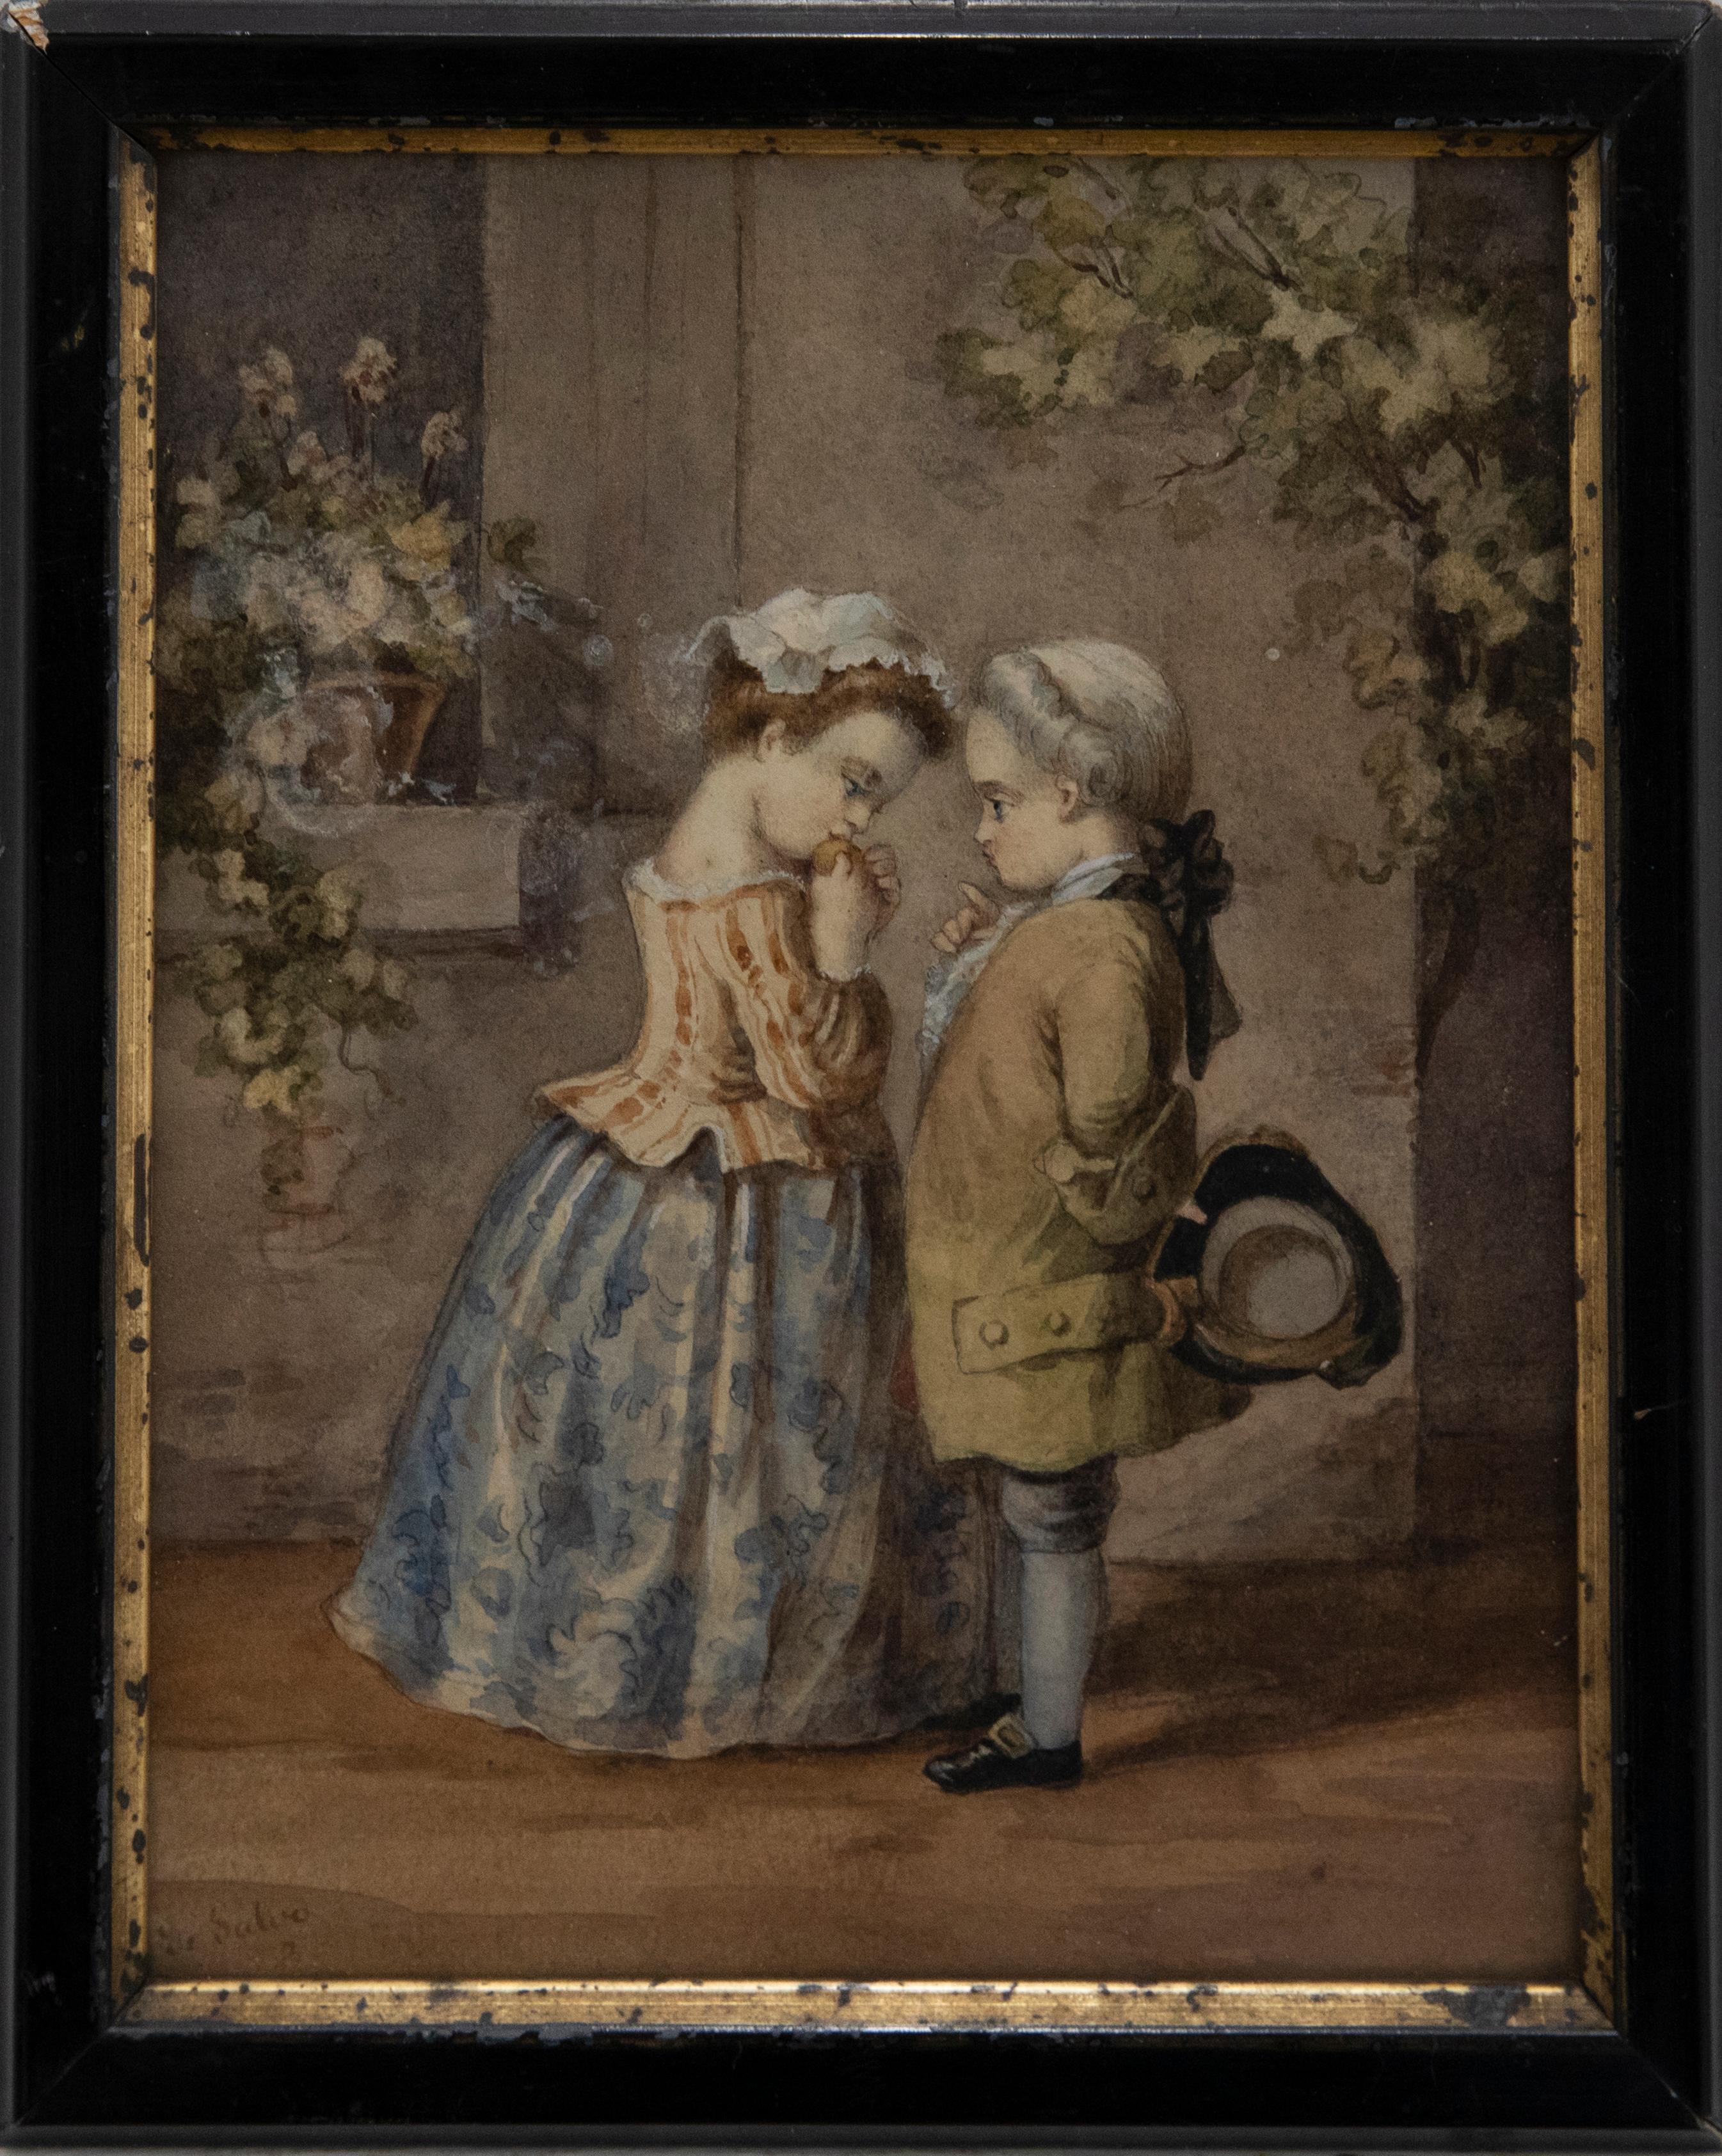 Ein feines und detailreiches Aquarell aus dem 19. Jahrhundert, das zwei Kinder in georgianischer Kleidung zeigt. Der Künstler hat am linken Rand signiert und das Gemälde wurde in einem schwarzen Rahmen aus dem 19. Jahrhundert mit vergoldetem